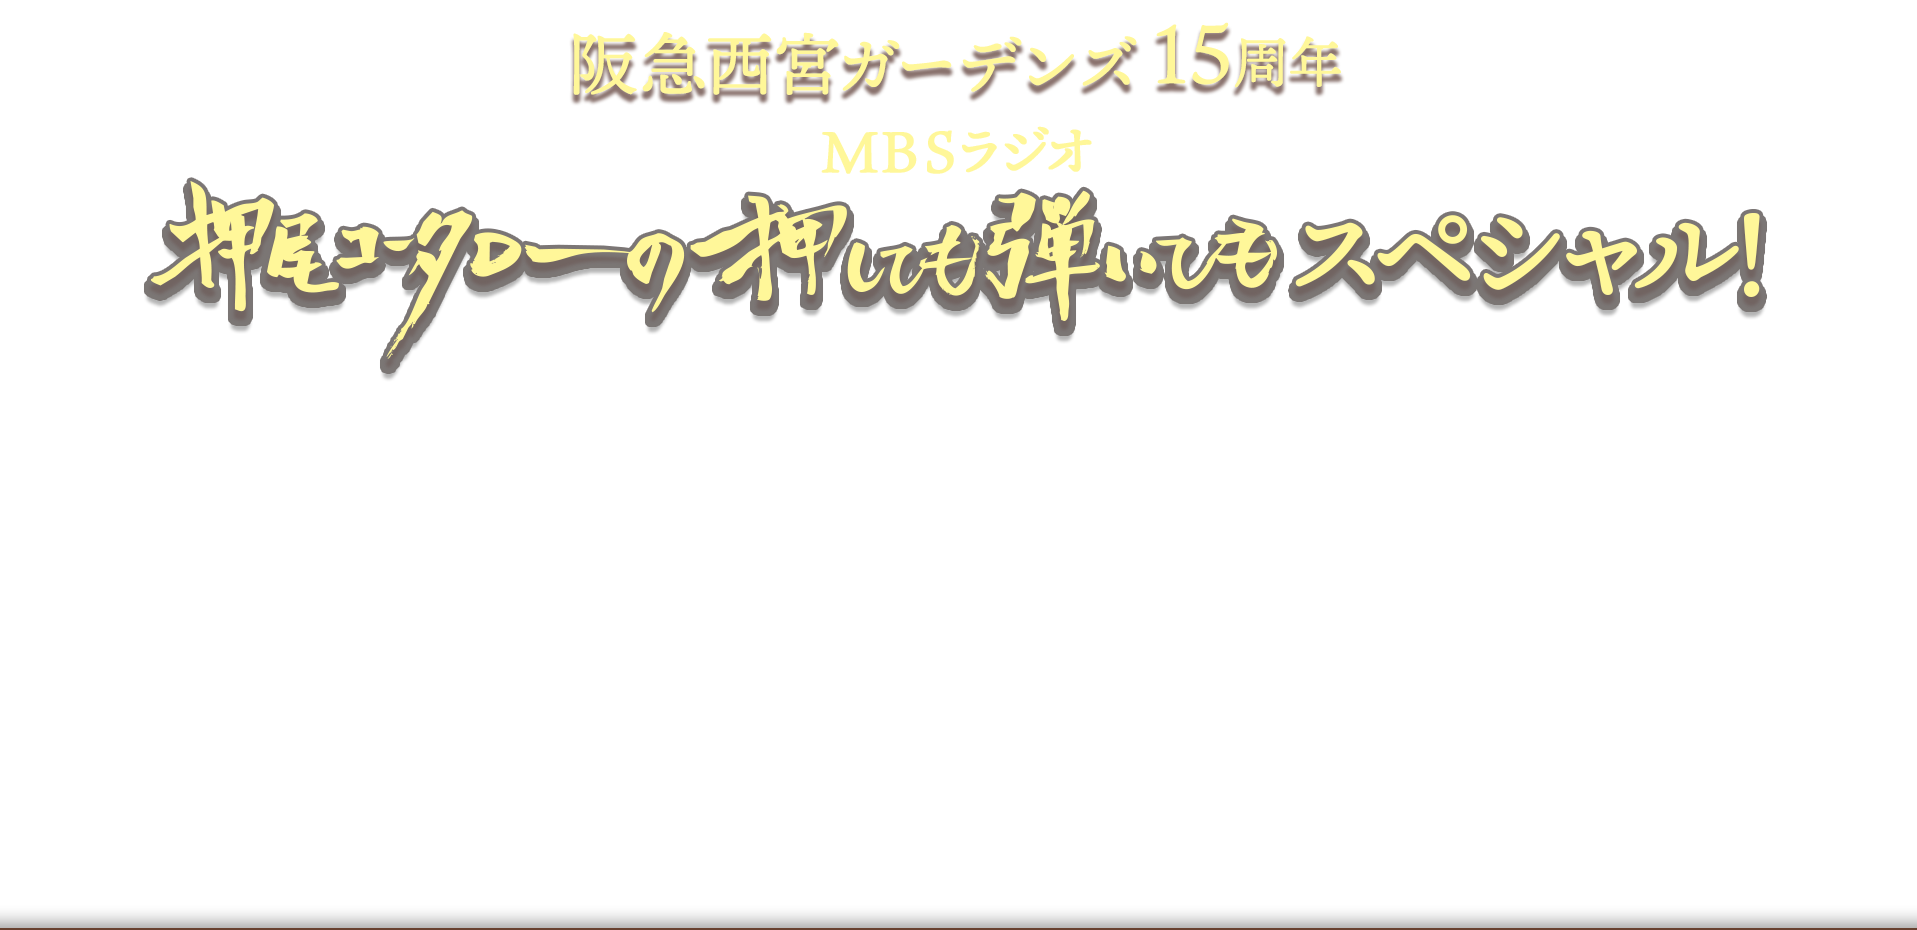 阪急西宮ガーデンズ開業15周年記念MBSラジオ「押尾コータローの押しても弾いてもスペシャル！」